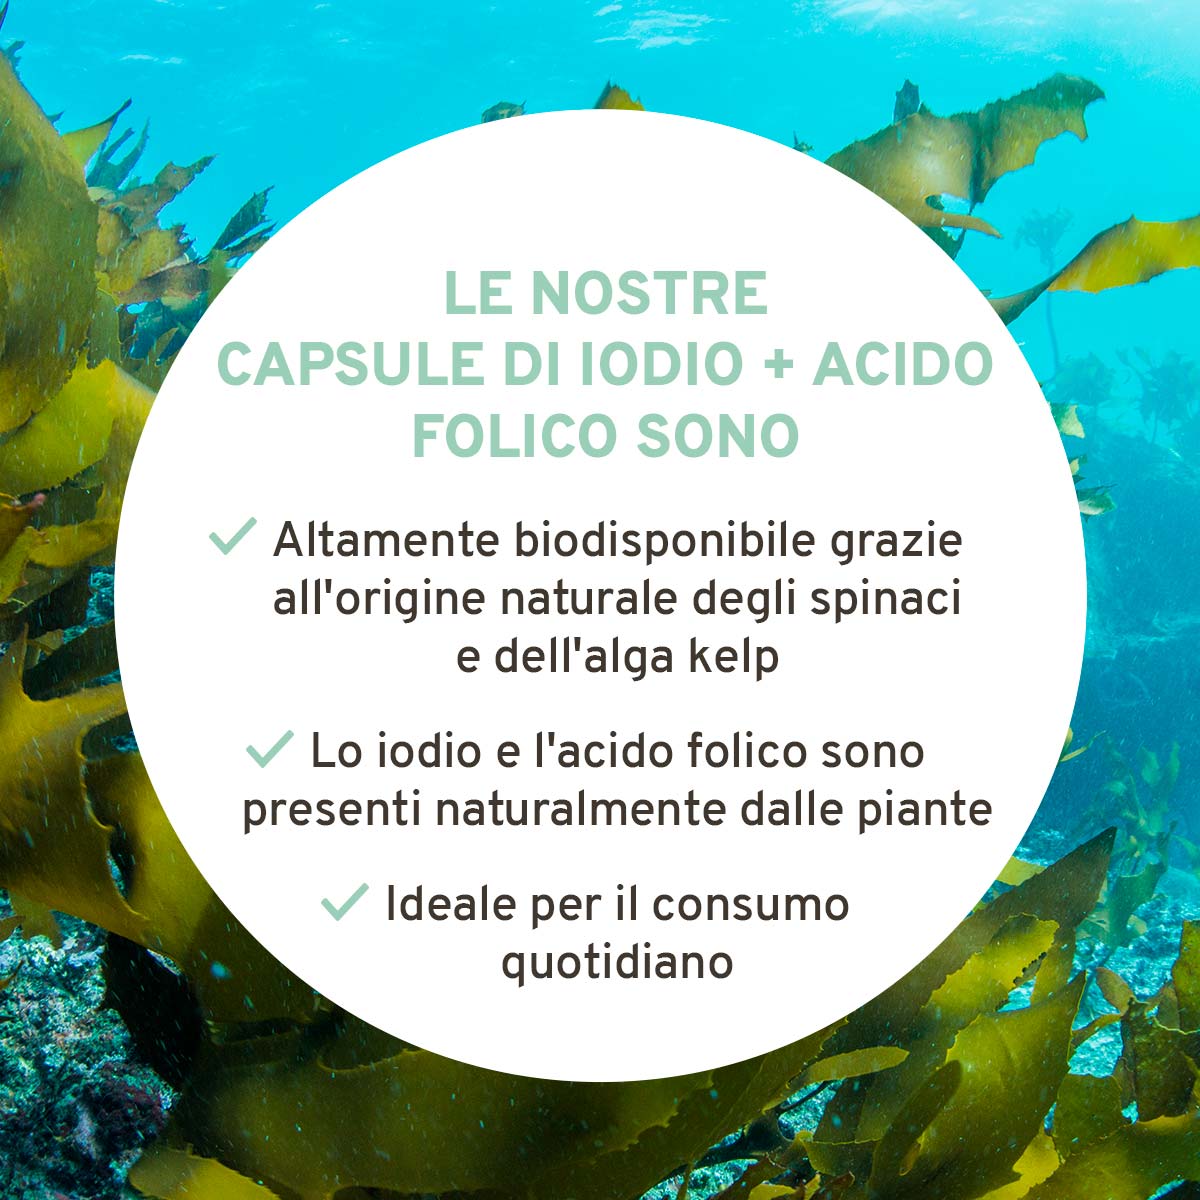 Iodio e acido folico: da alga kelp e spinaci